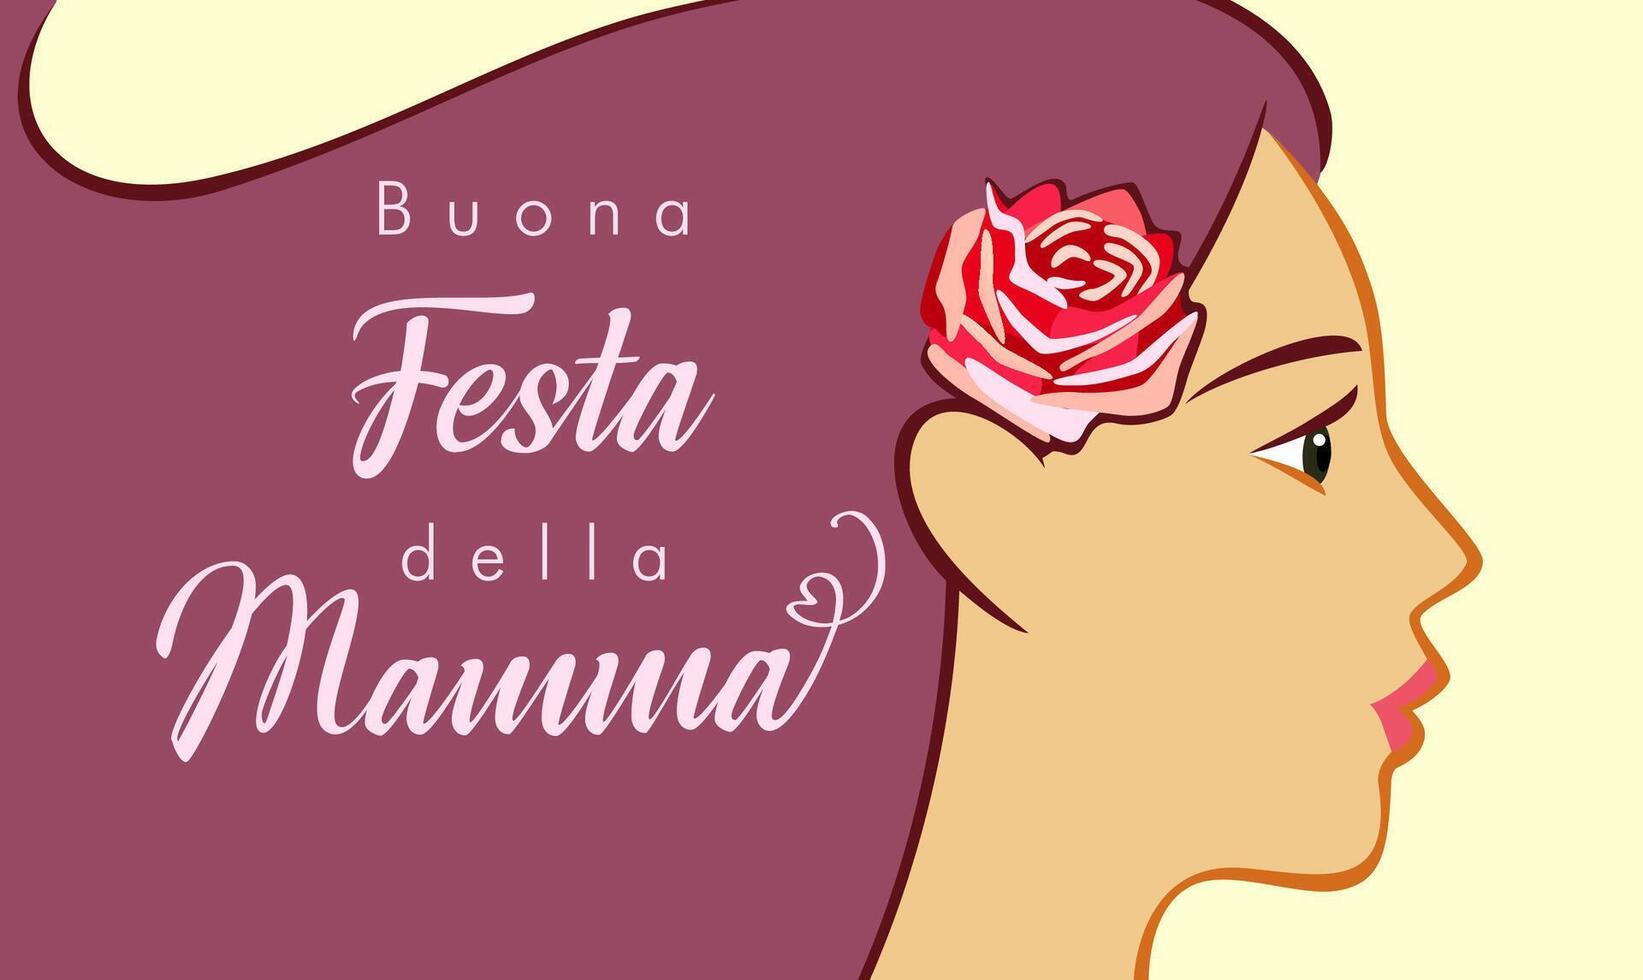 buona festa della Mama - - glücklich Mutter Tag Italienisch Grüße. Postkarte Design vektor